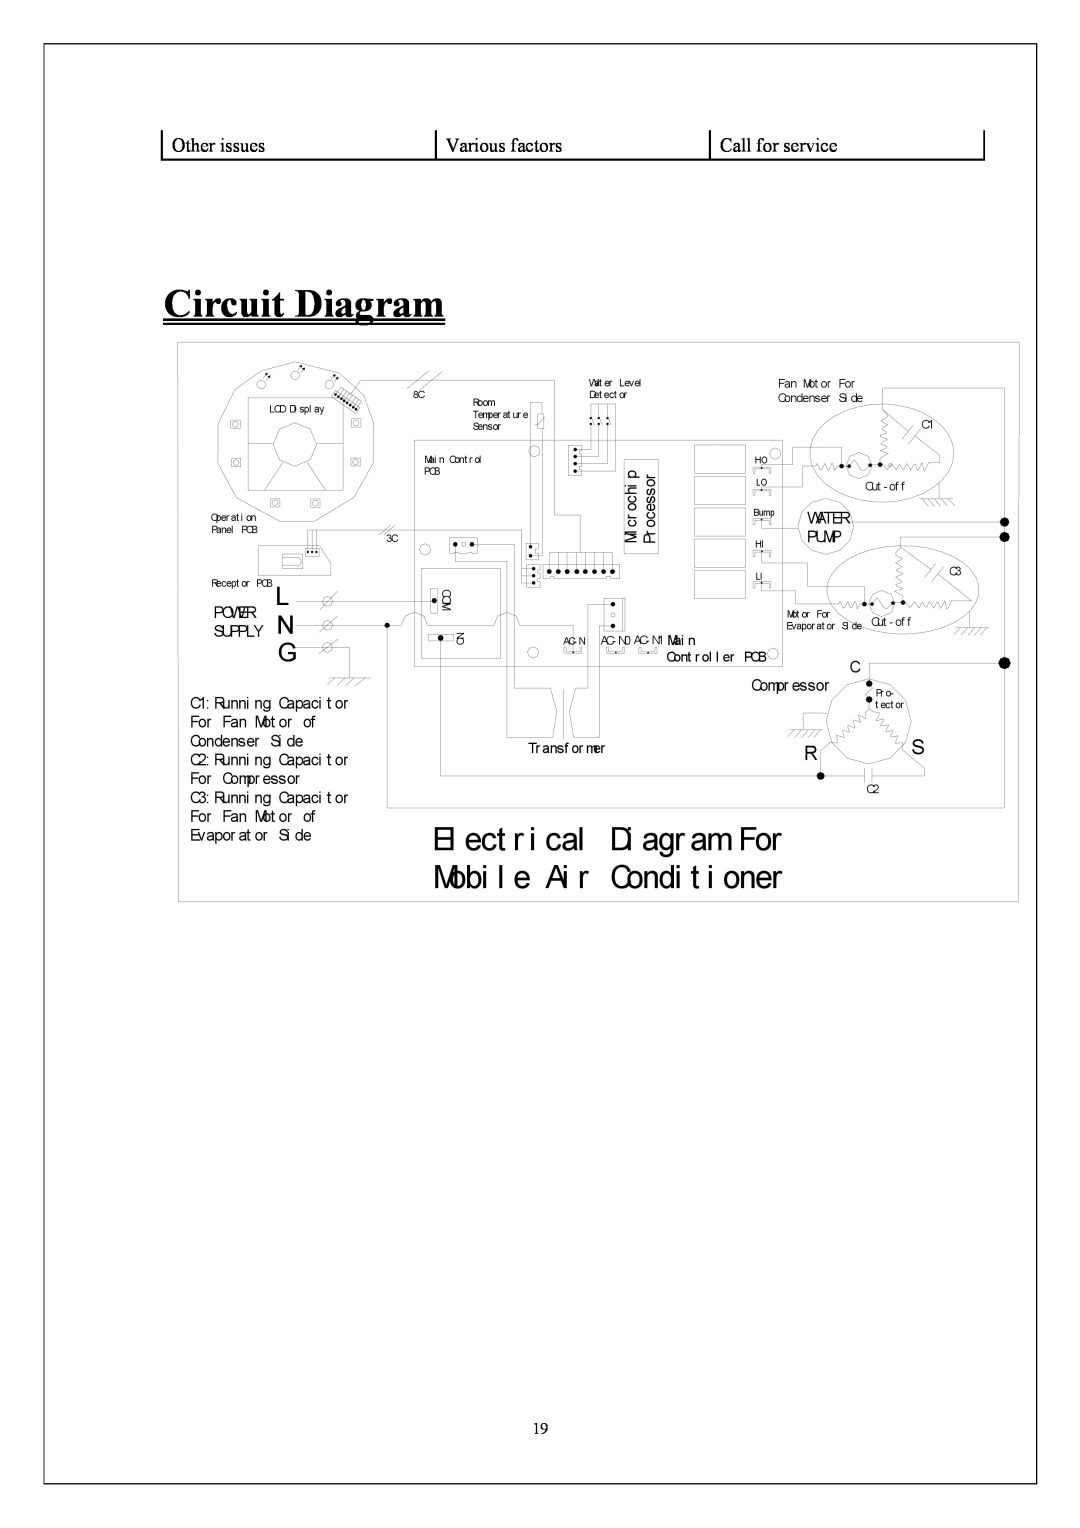 KoldFront PAC9000 manual Circuit Diagram, El ect r i cal, Di agr am For, Mobi l e Ai r, Condi t i oner 